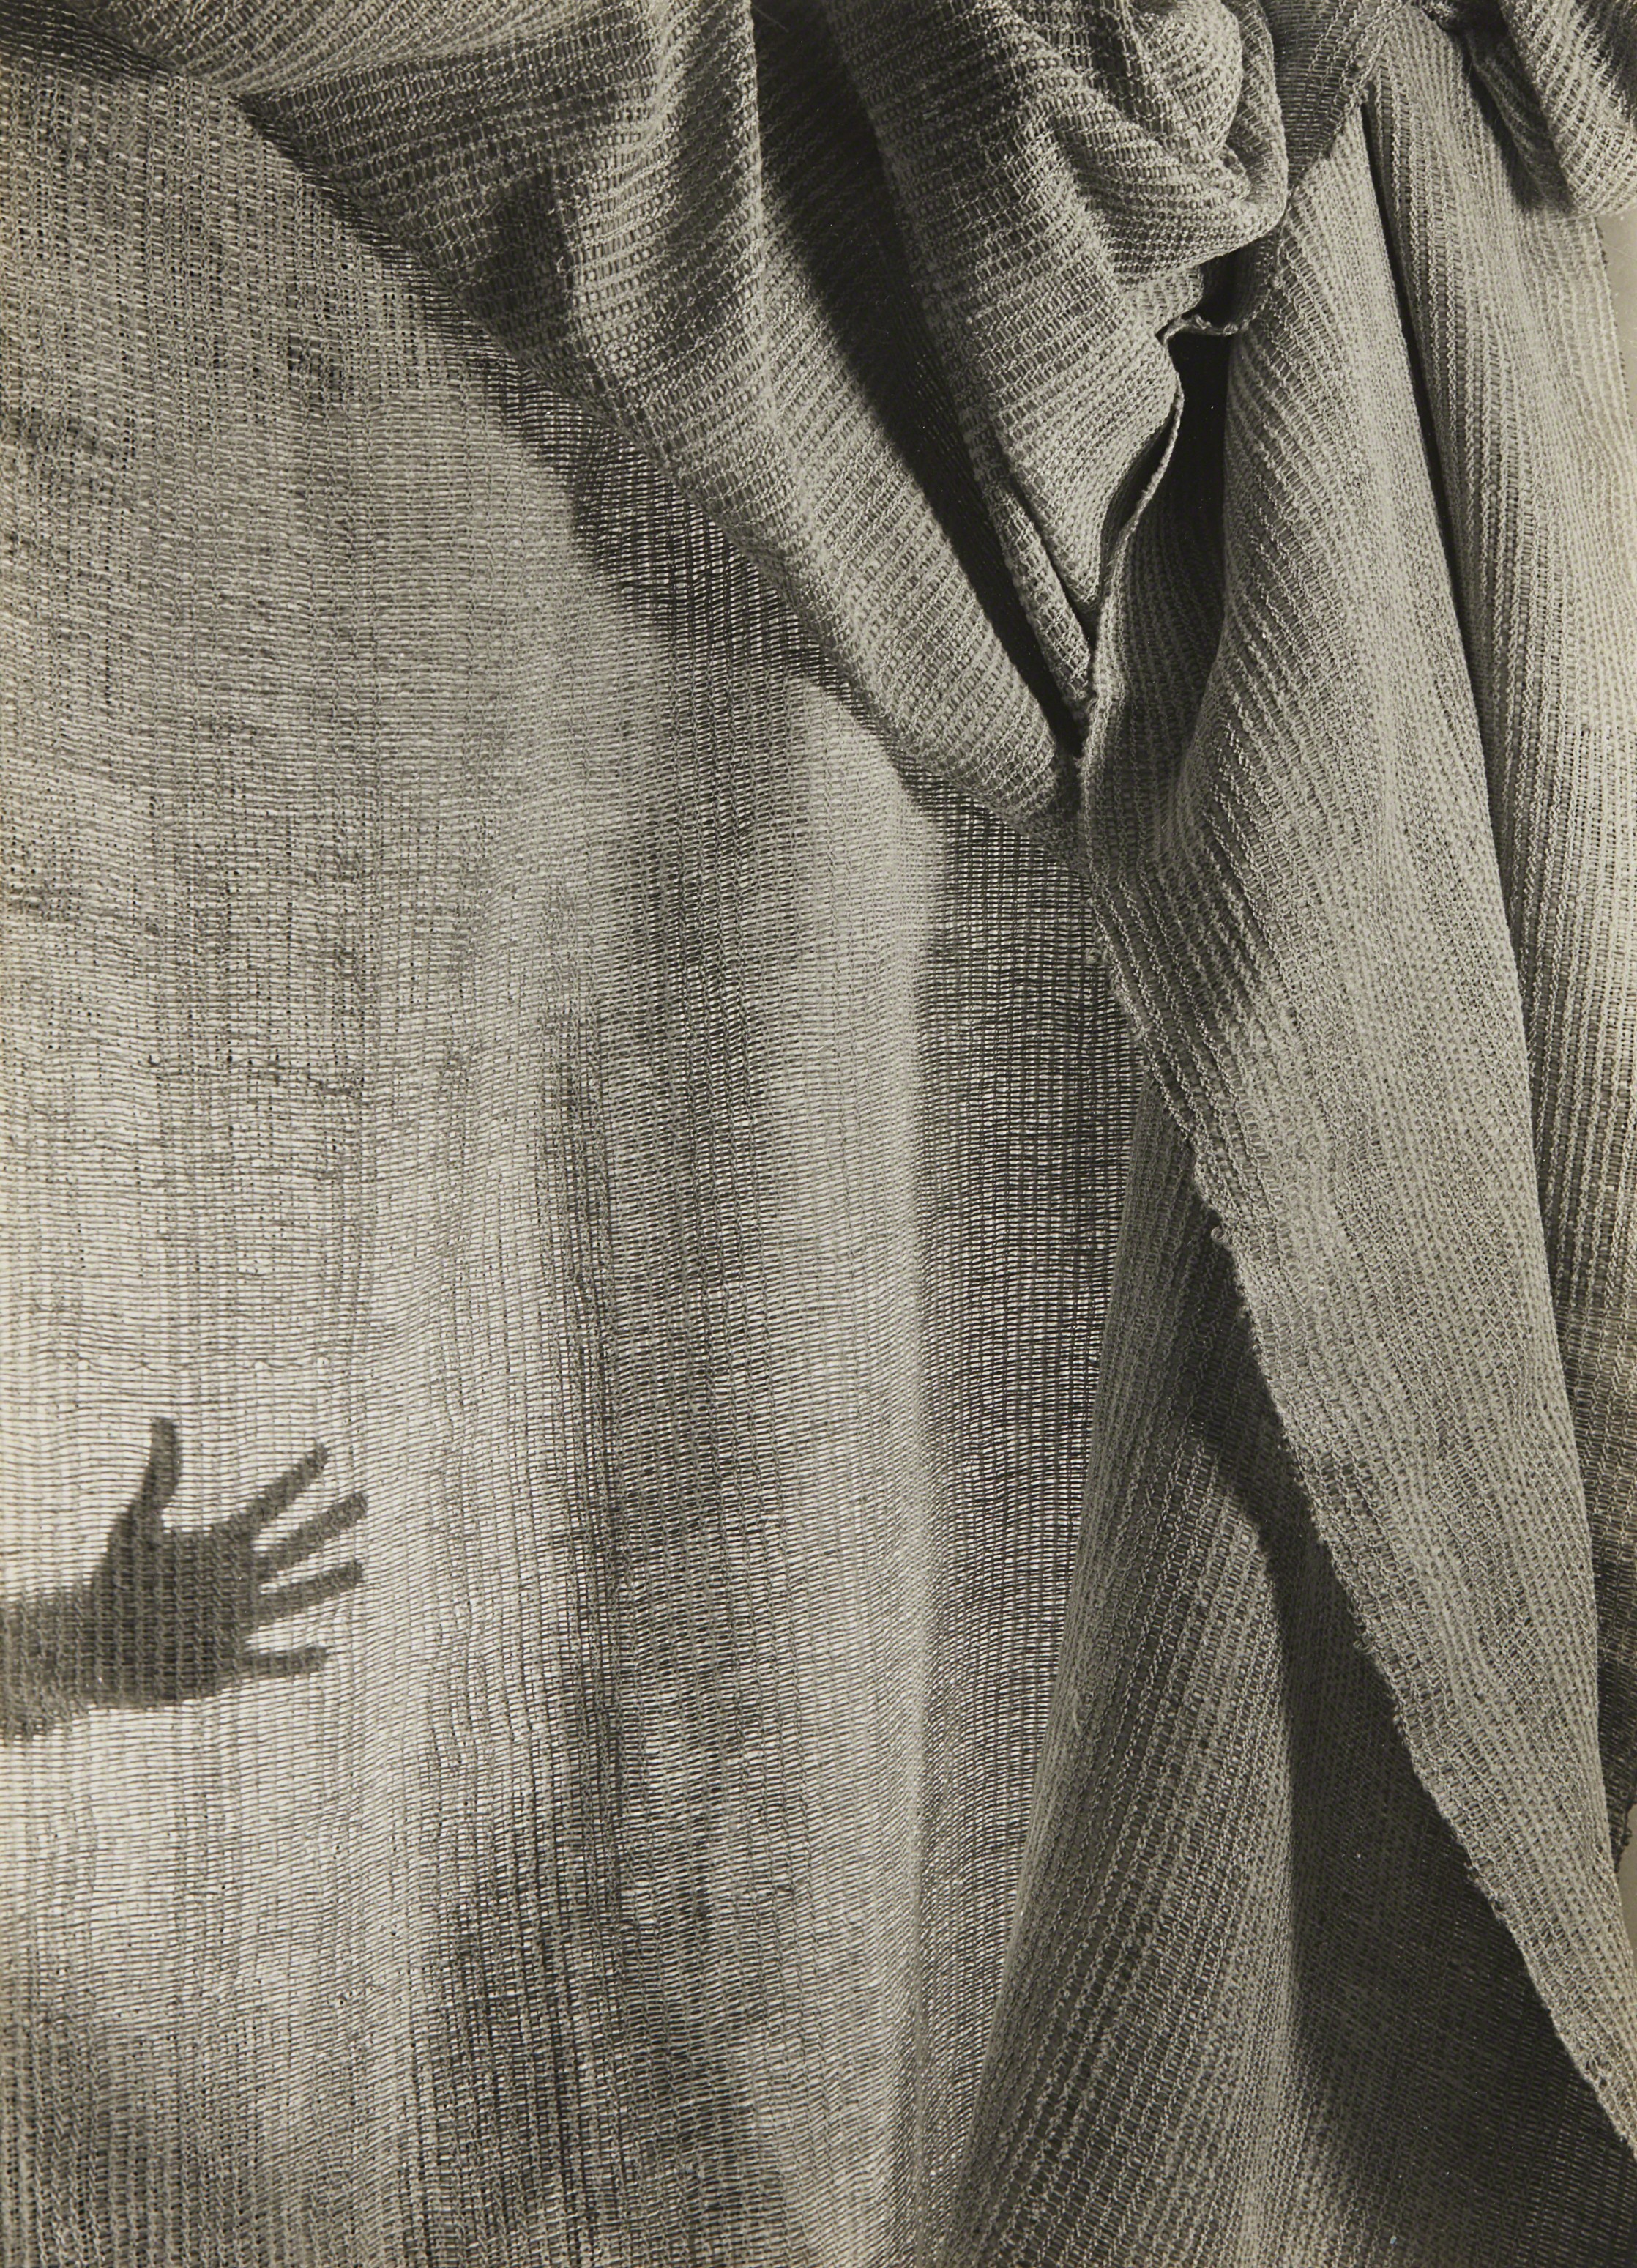 Ручное плетение и рука, 1946. Фотограф Имоджен Каннингем